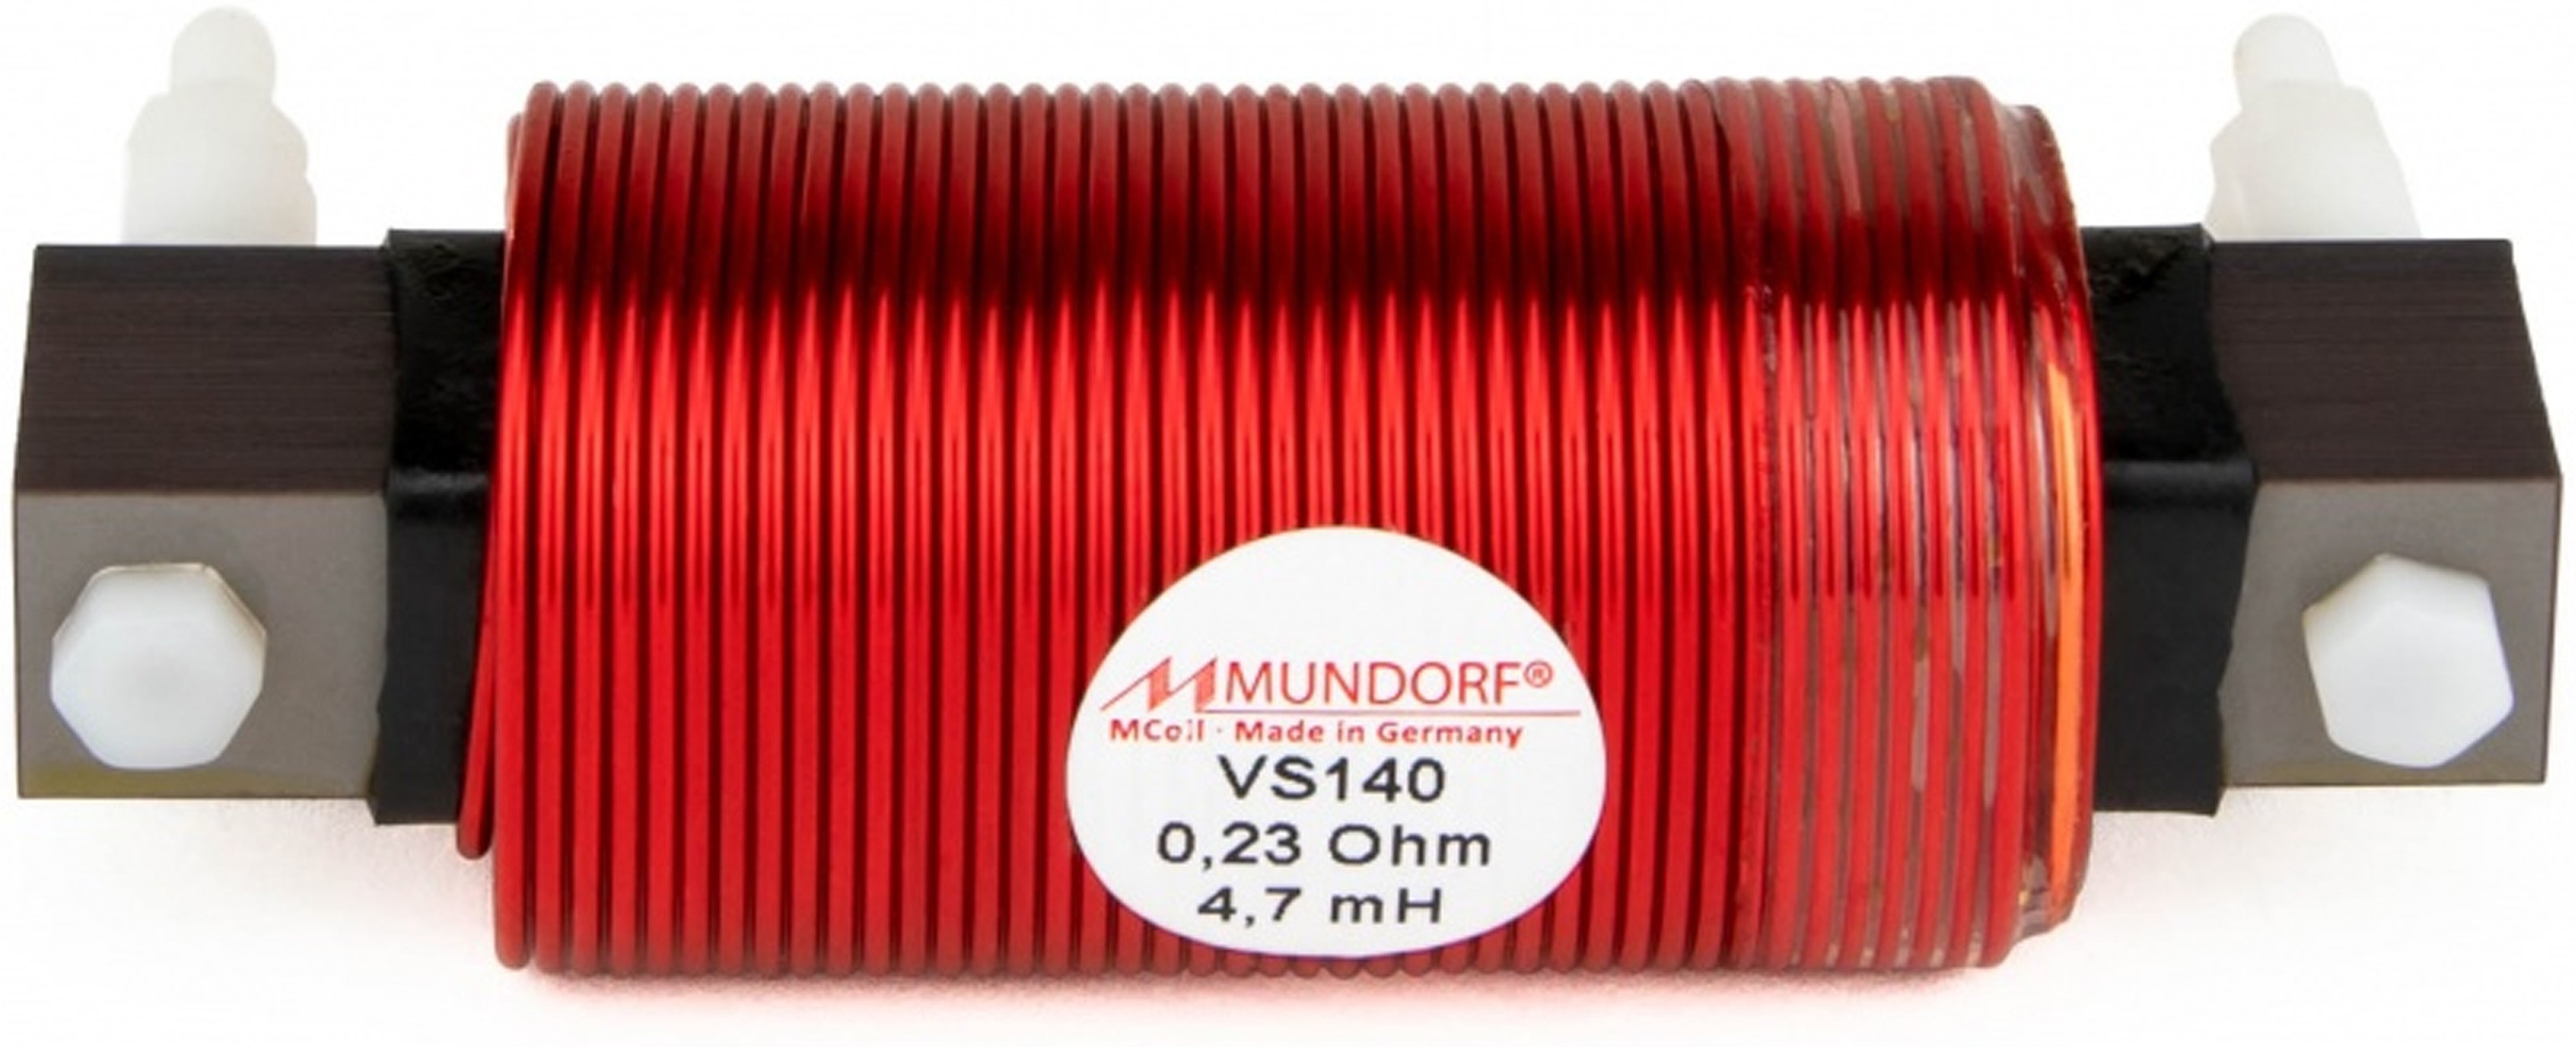 MUNDORF VS140-8.2 MCOIL ICORE Copper Coil Feron Core 8.2mH